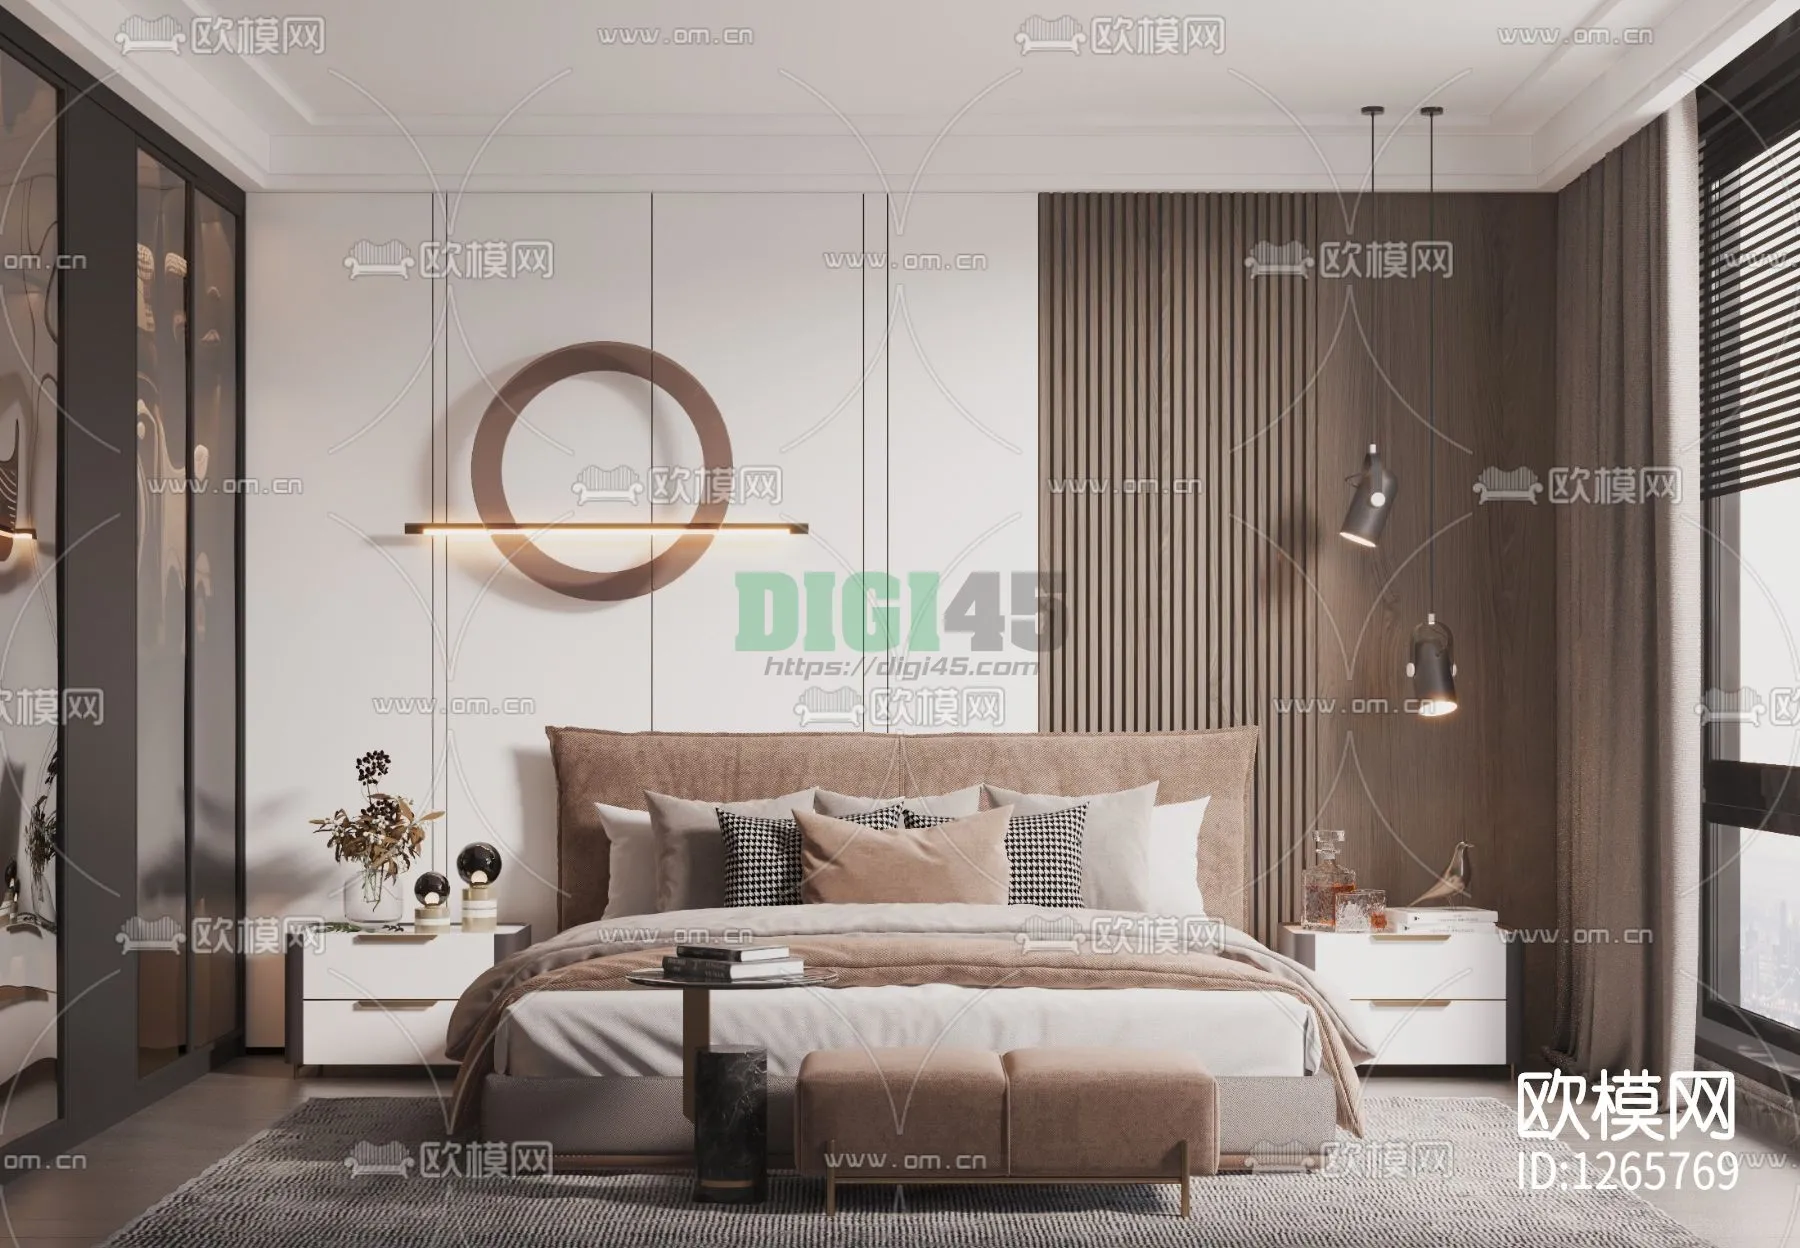 Bedroom 3D Scenes – 1128